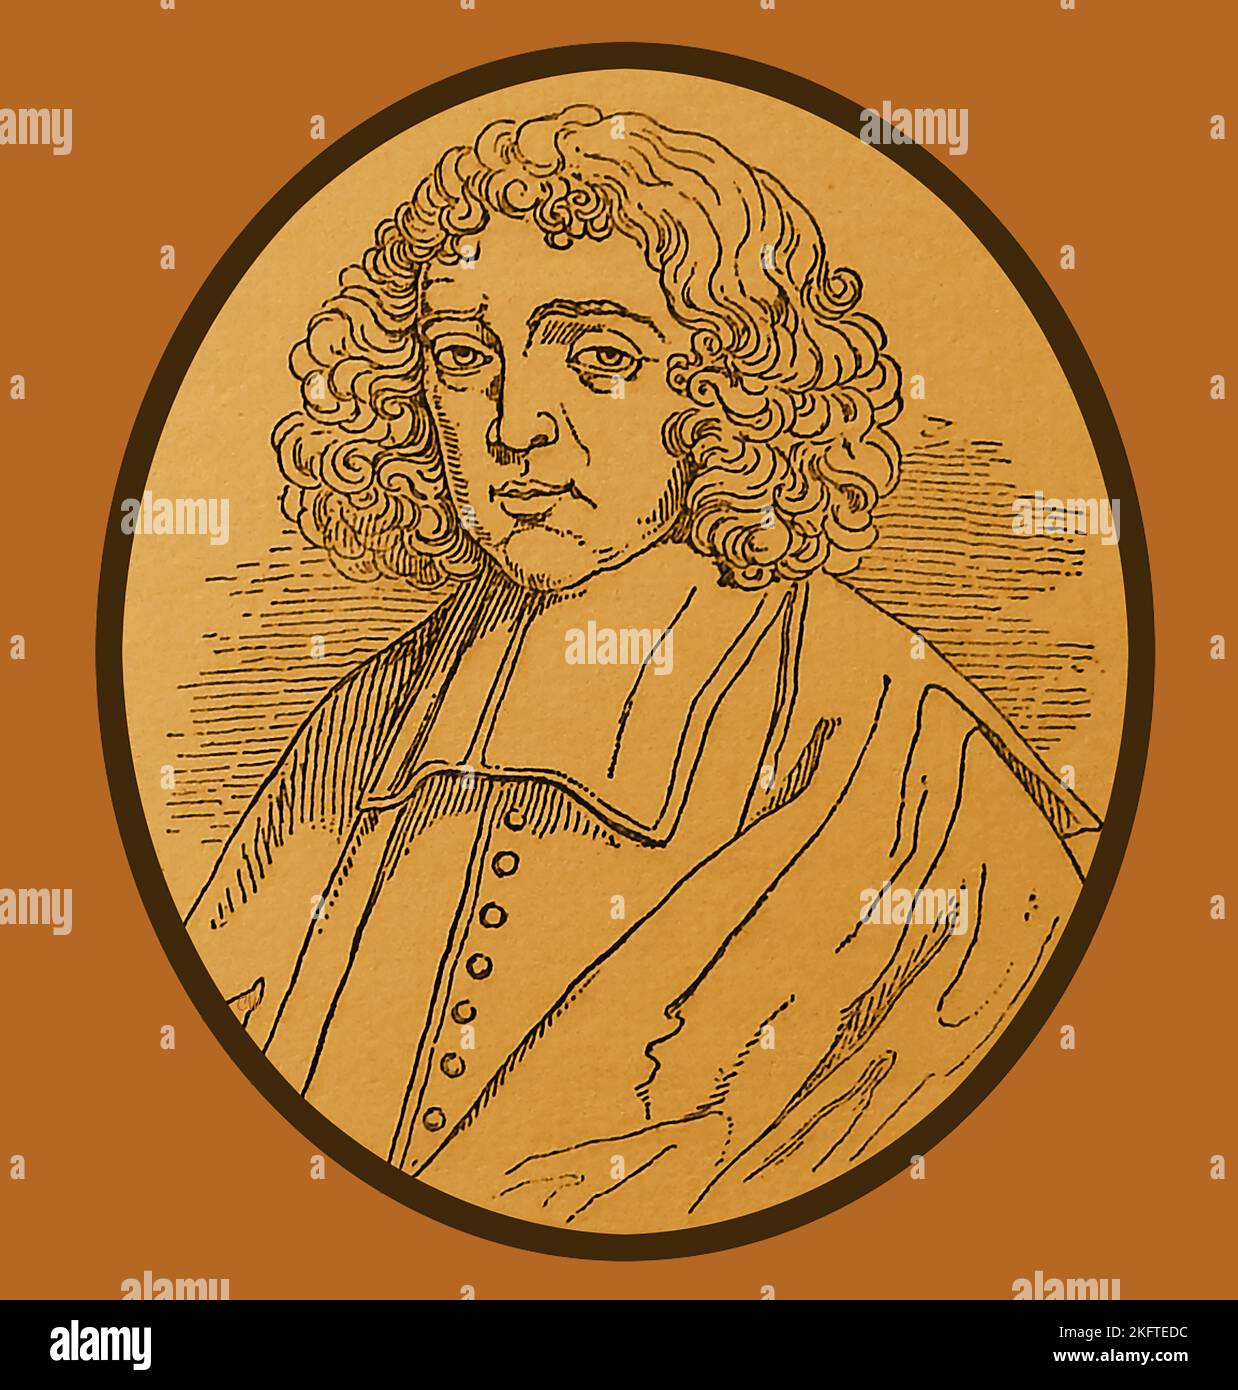 Ein Portrait von Benedikt de Spinoza aus dem späten 19.. Jahrhundert, 1632 – 1677 . (Geboren Bento de Espinosa), aber auch bekannt als Baruch Spinoza und Benedictus de Spinoza. Er war ein Philosoph portugiesischer Herkunft, der in Amsterdam geboren wurde. --- Een laat 19e eeuws gegraveerd portret van Benedictus de Spinoza, 1632 – 1677. (Geboren als Bento de Espinosa) maar ook bekend als Baruch Spinoza en Benedictus de Spinoza. Hij was een filosoof van Portugese afkomst, geboren in Amsterdam. -- um retrato gravado no final do século XIX de Bento de Spinoza, 1632 - 1677 . -- ברוך שפינוזה Stockfoto